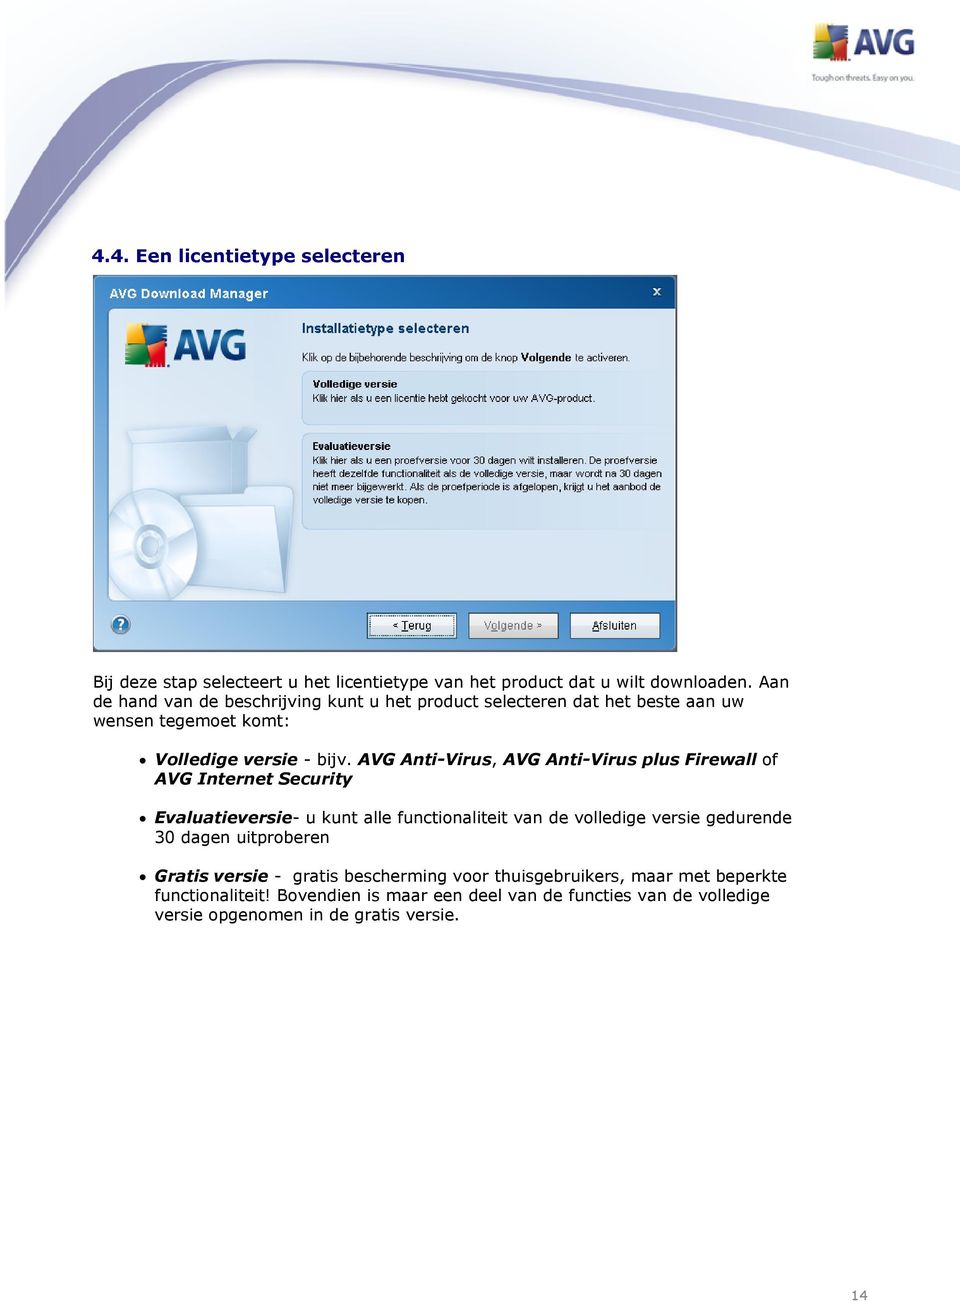 AVG Anti-Virus, AVG Anti-Virus plus Firewall of AVG Internet Security Evaluatieversie- u kunt alle functionaliteit van de volledige versie gedurende 30